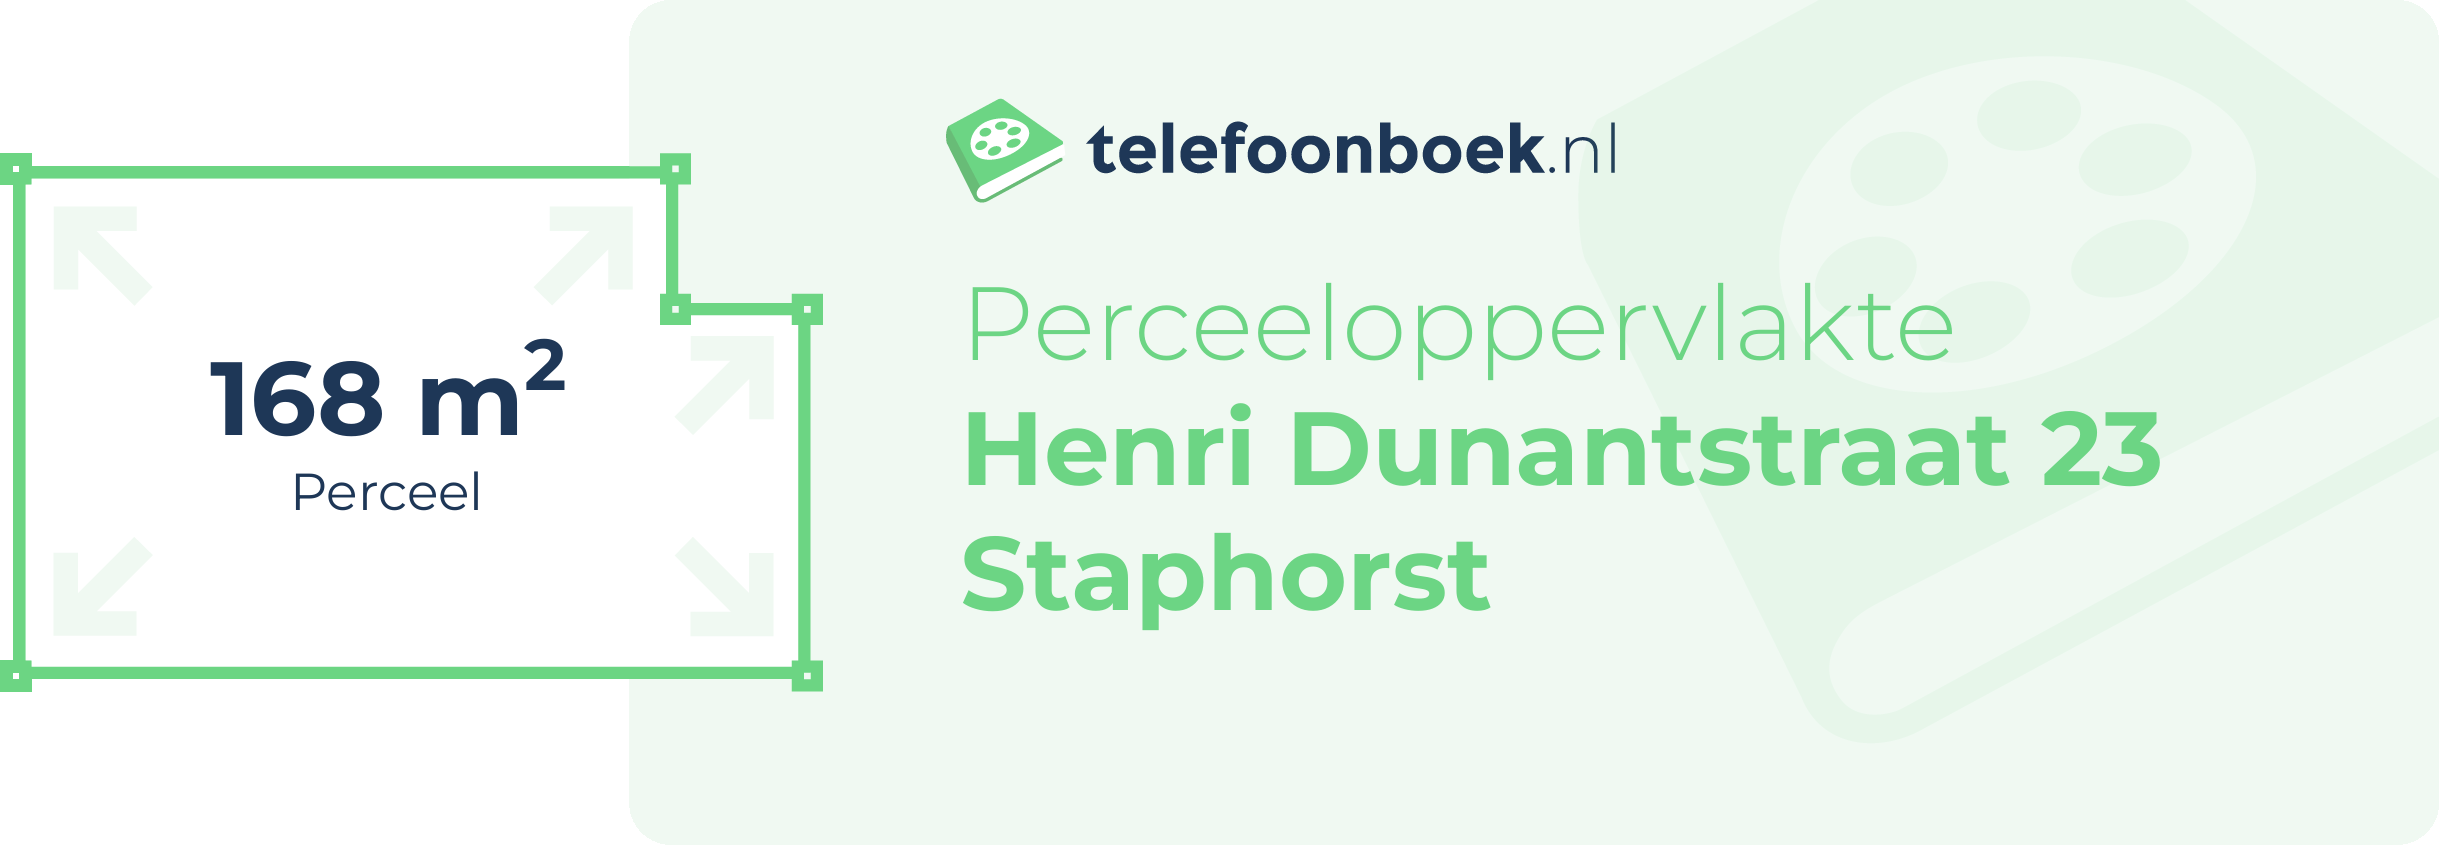 Perceeloppervlakte Henri Dunantstraat 23 Staphorst